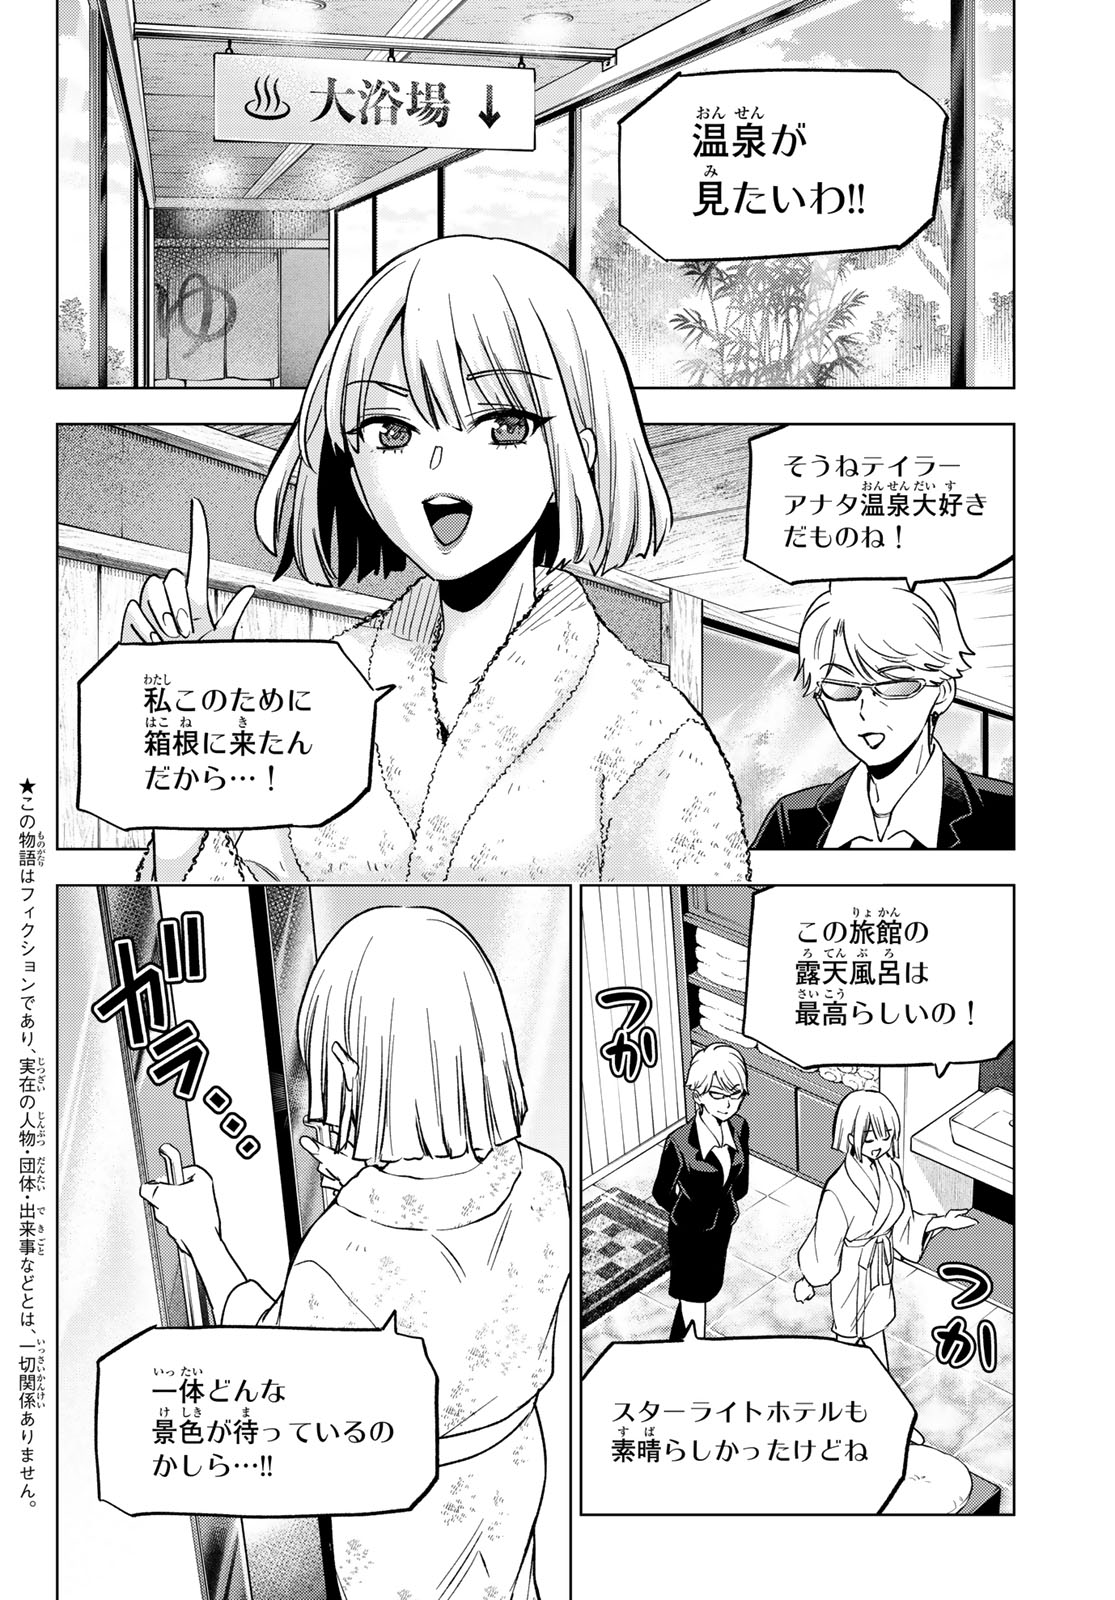 Kakkou no Iinazuke - Chapter 199 - Page 2